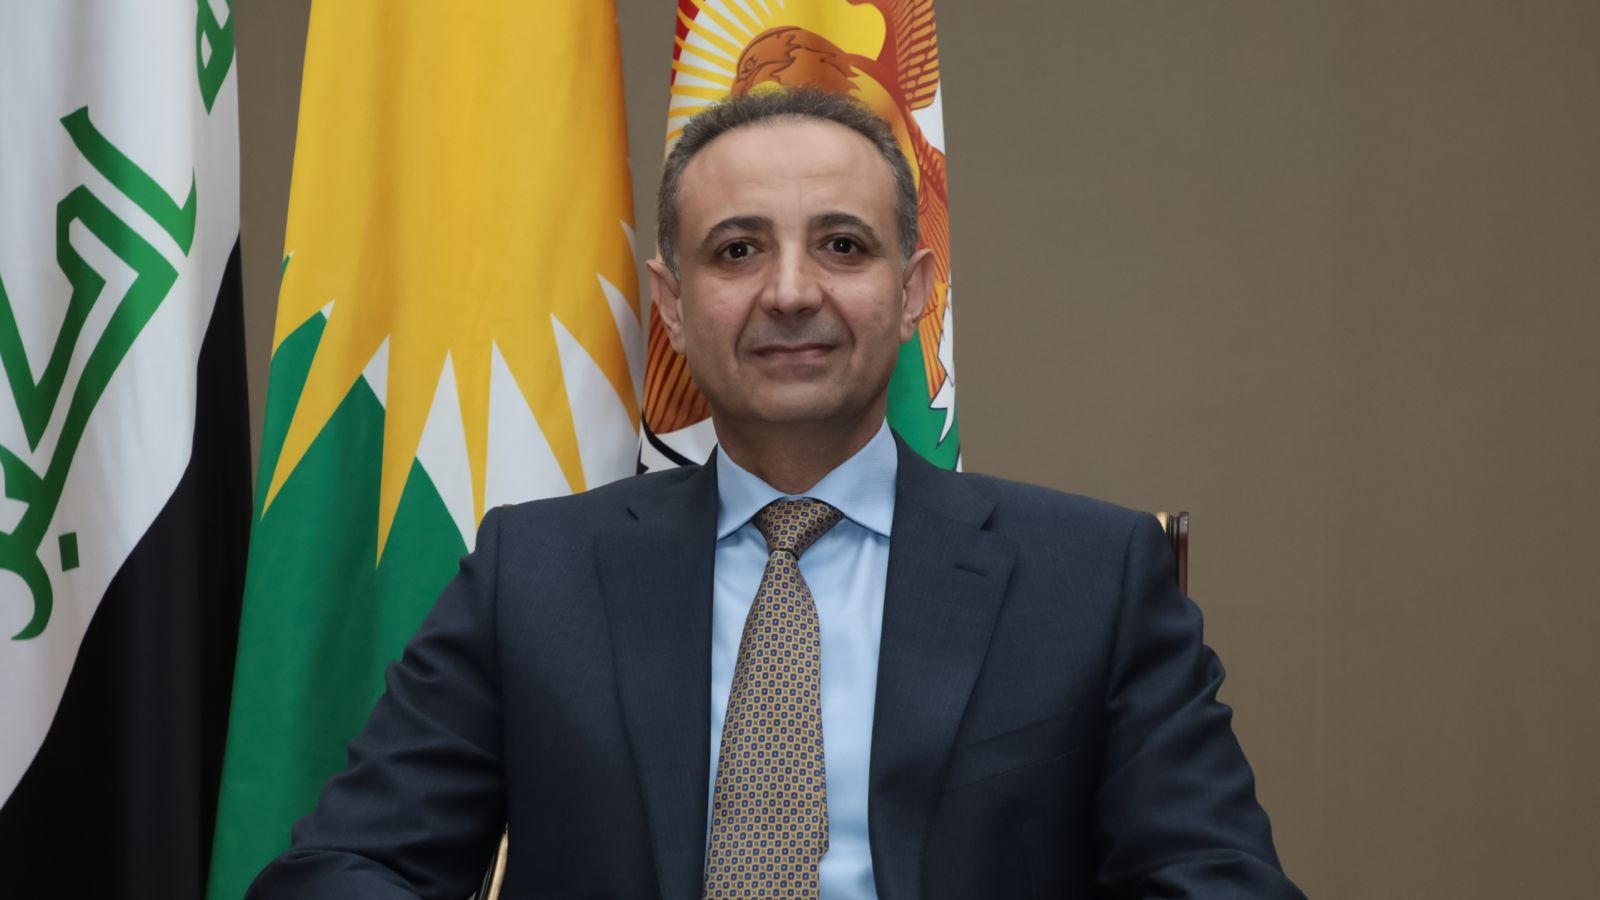 كوردستان تشجع اذربيجان على الاستثمار في الإقليم وتسعى لفتح قنصلية لها في أربيل